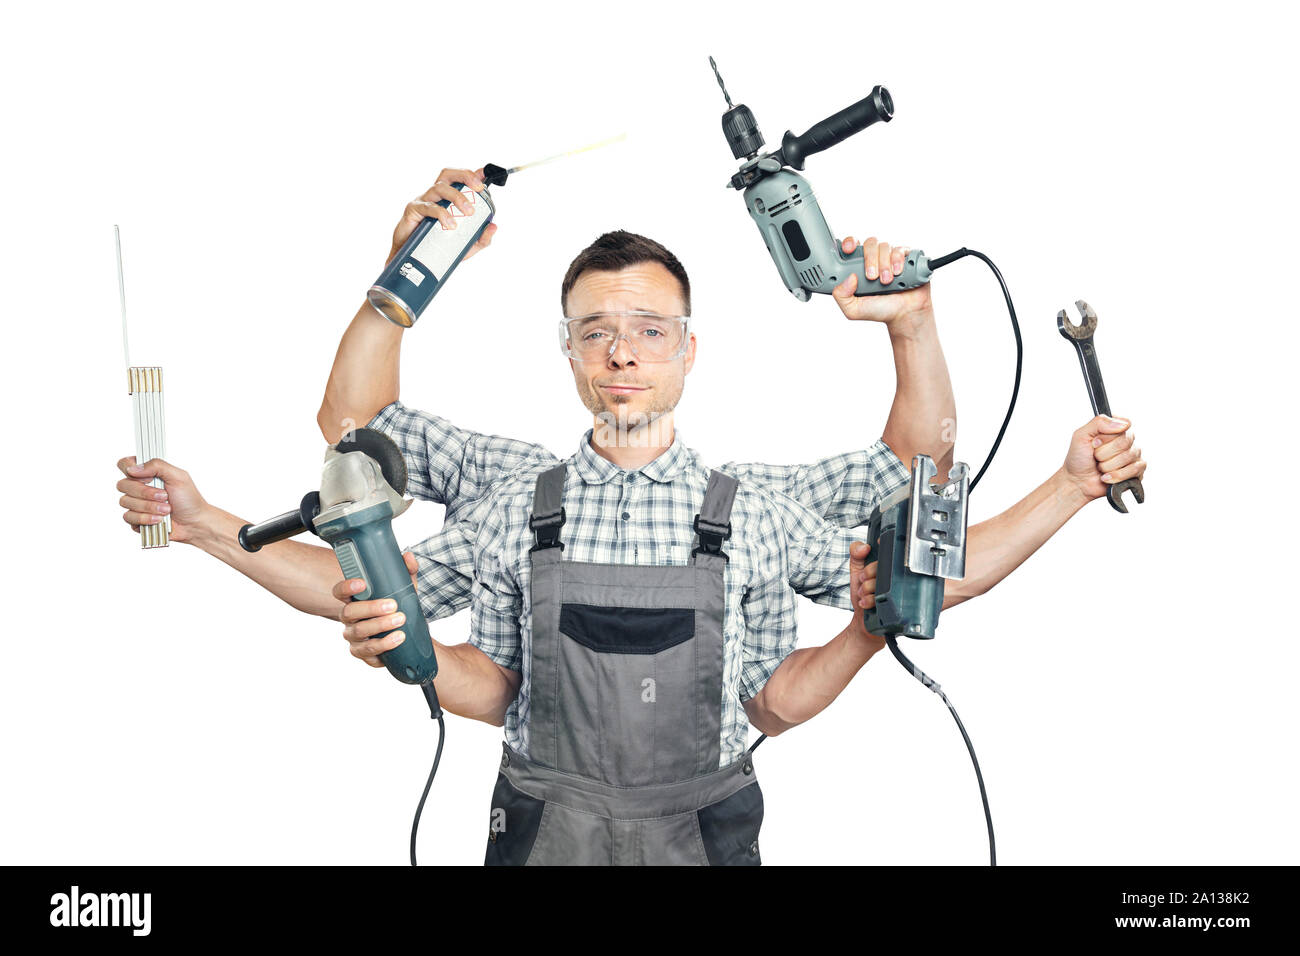 Divertente ritratto di un artigiano con 6 armi e utensili Foto Stock